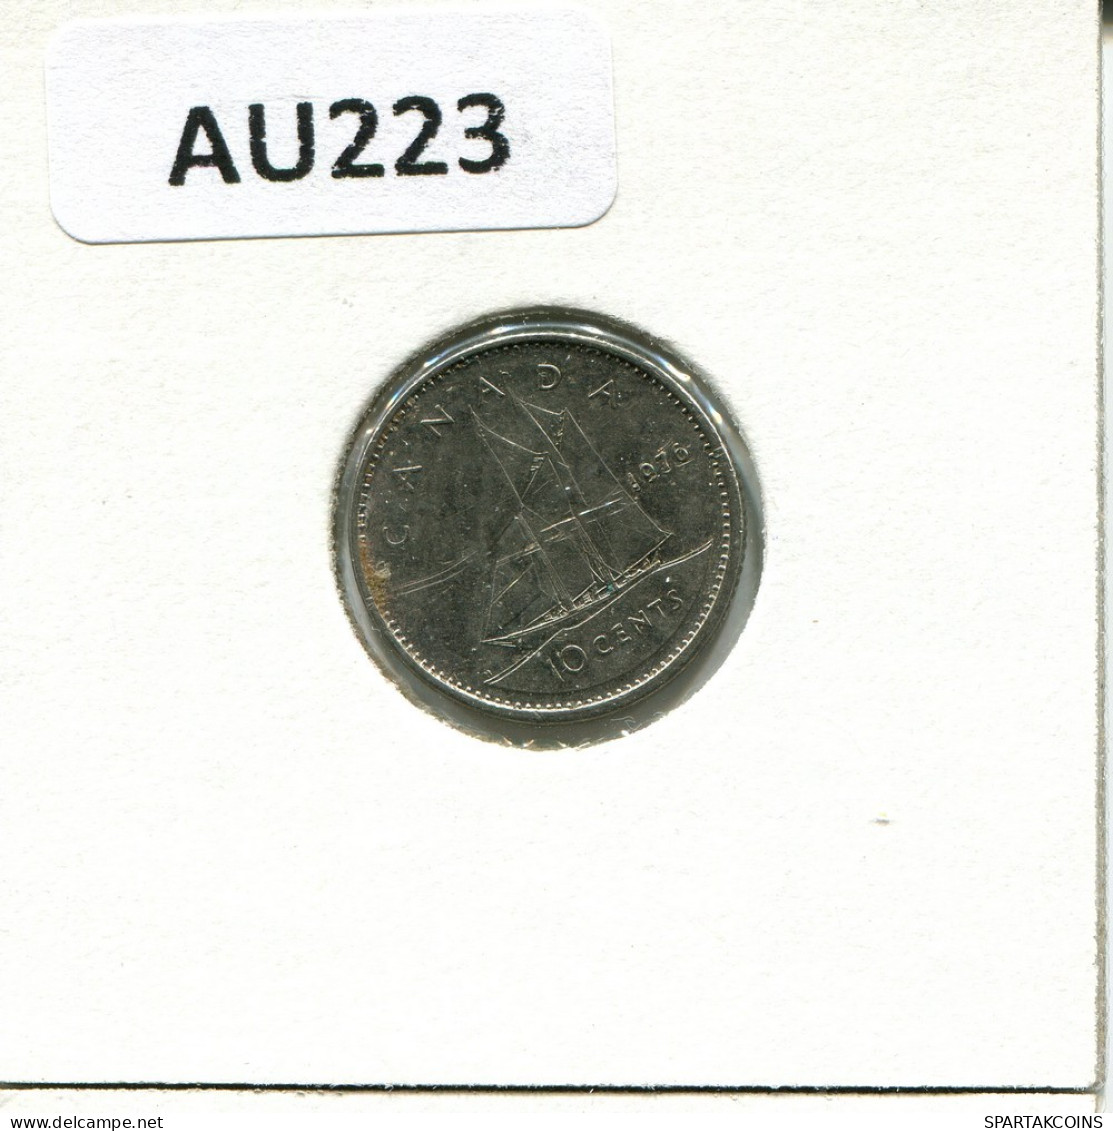 10 CENT 1976 CANADA Coin #AU223.U.A - Canada